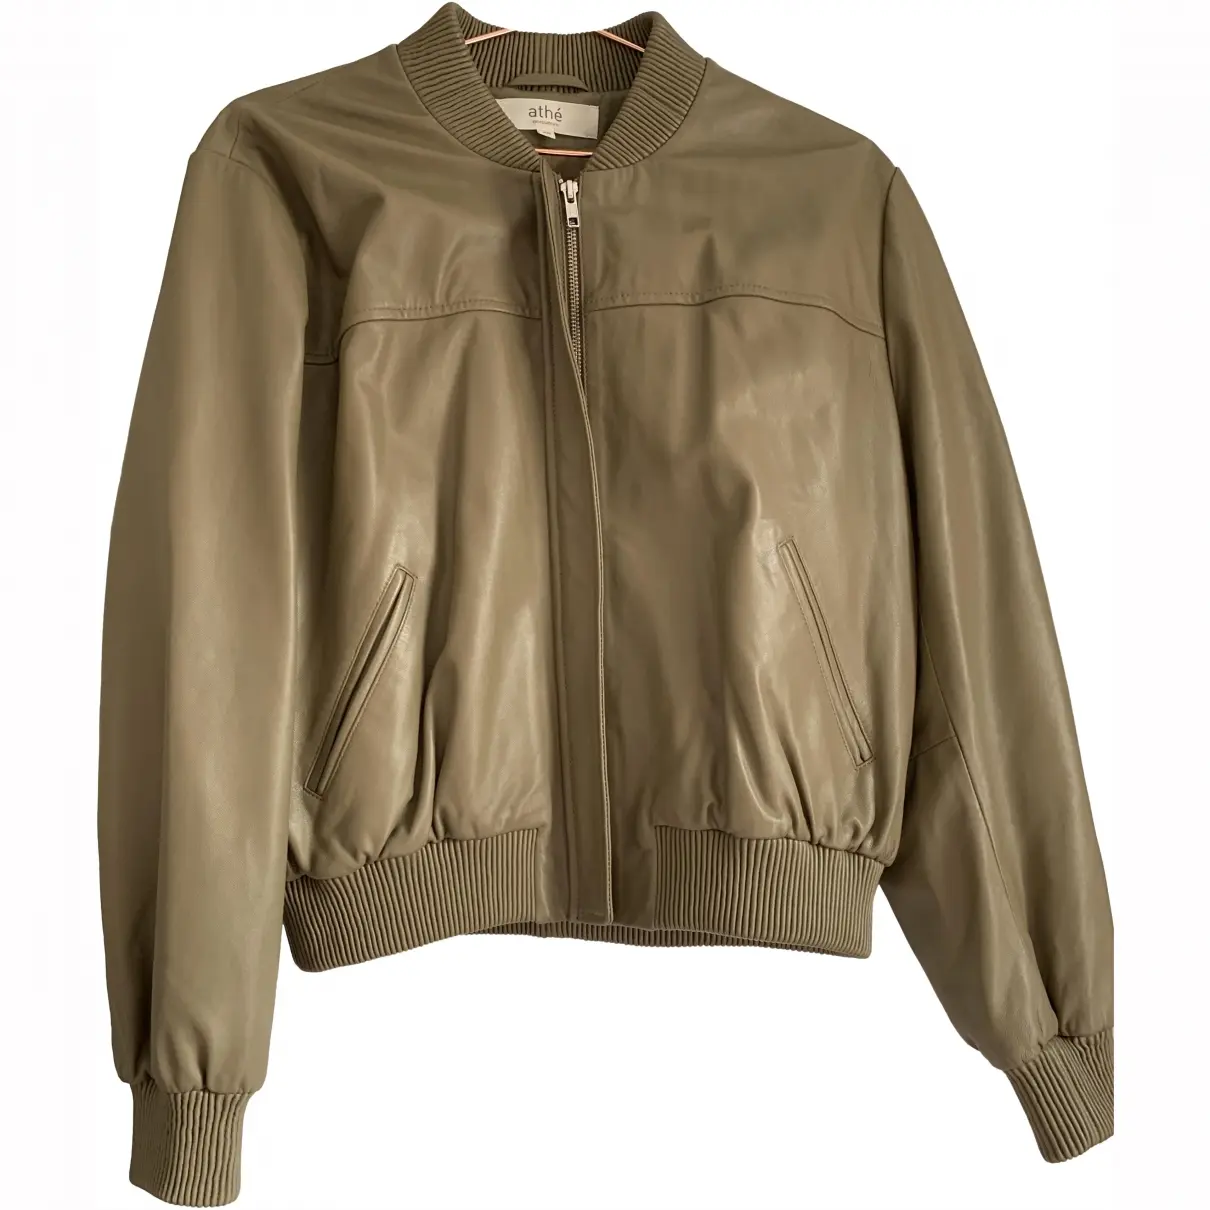 Leather jacket Vanessa Bruno Athe